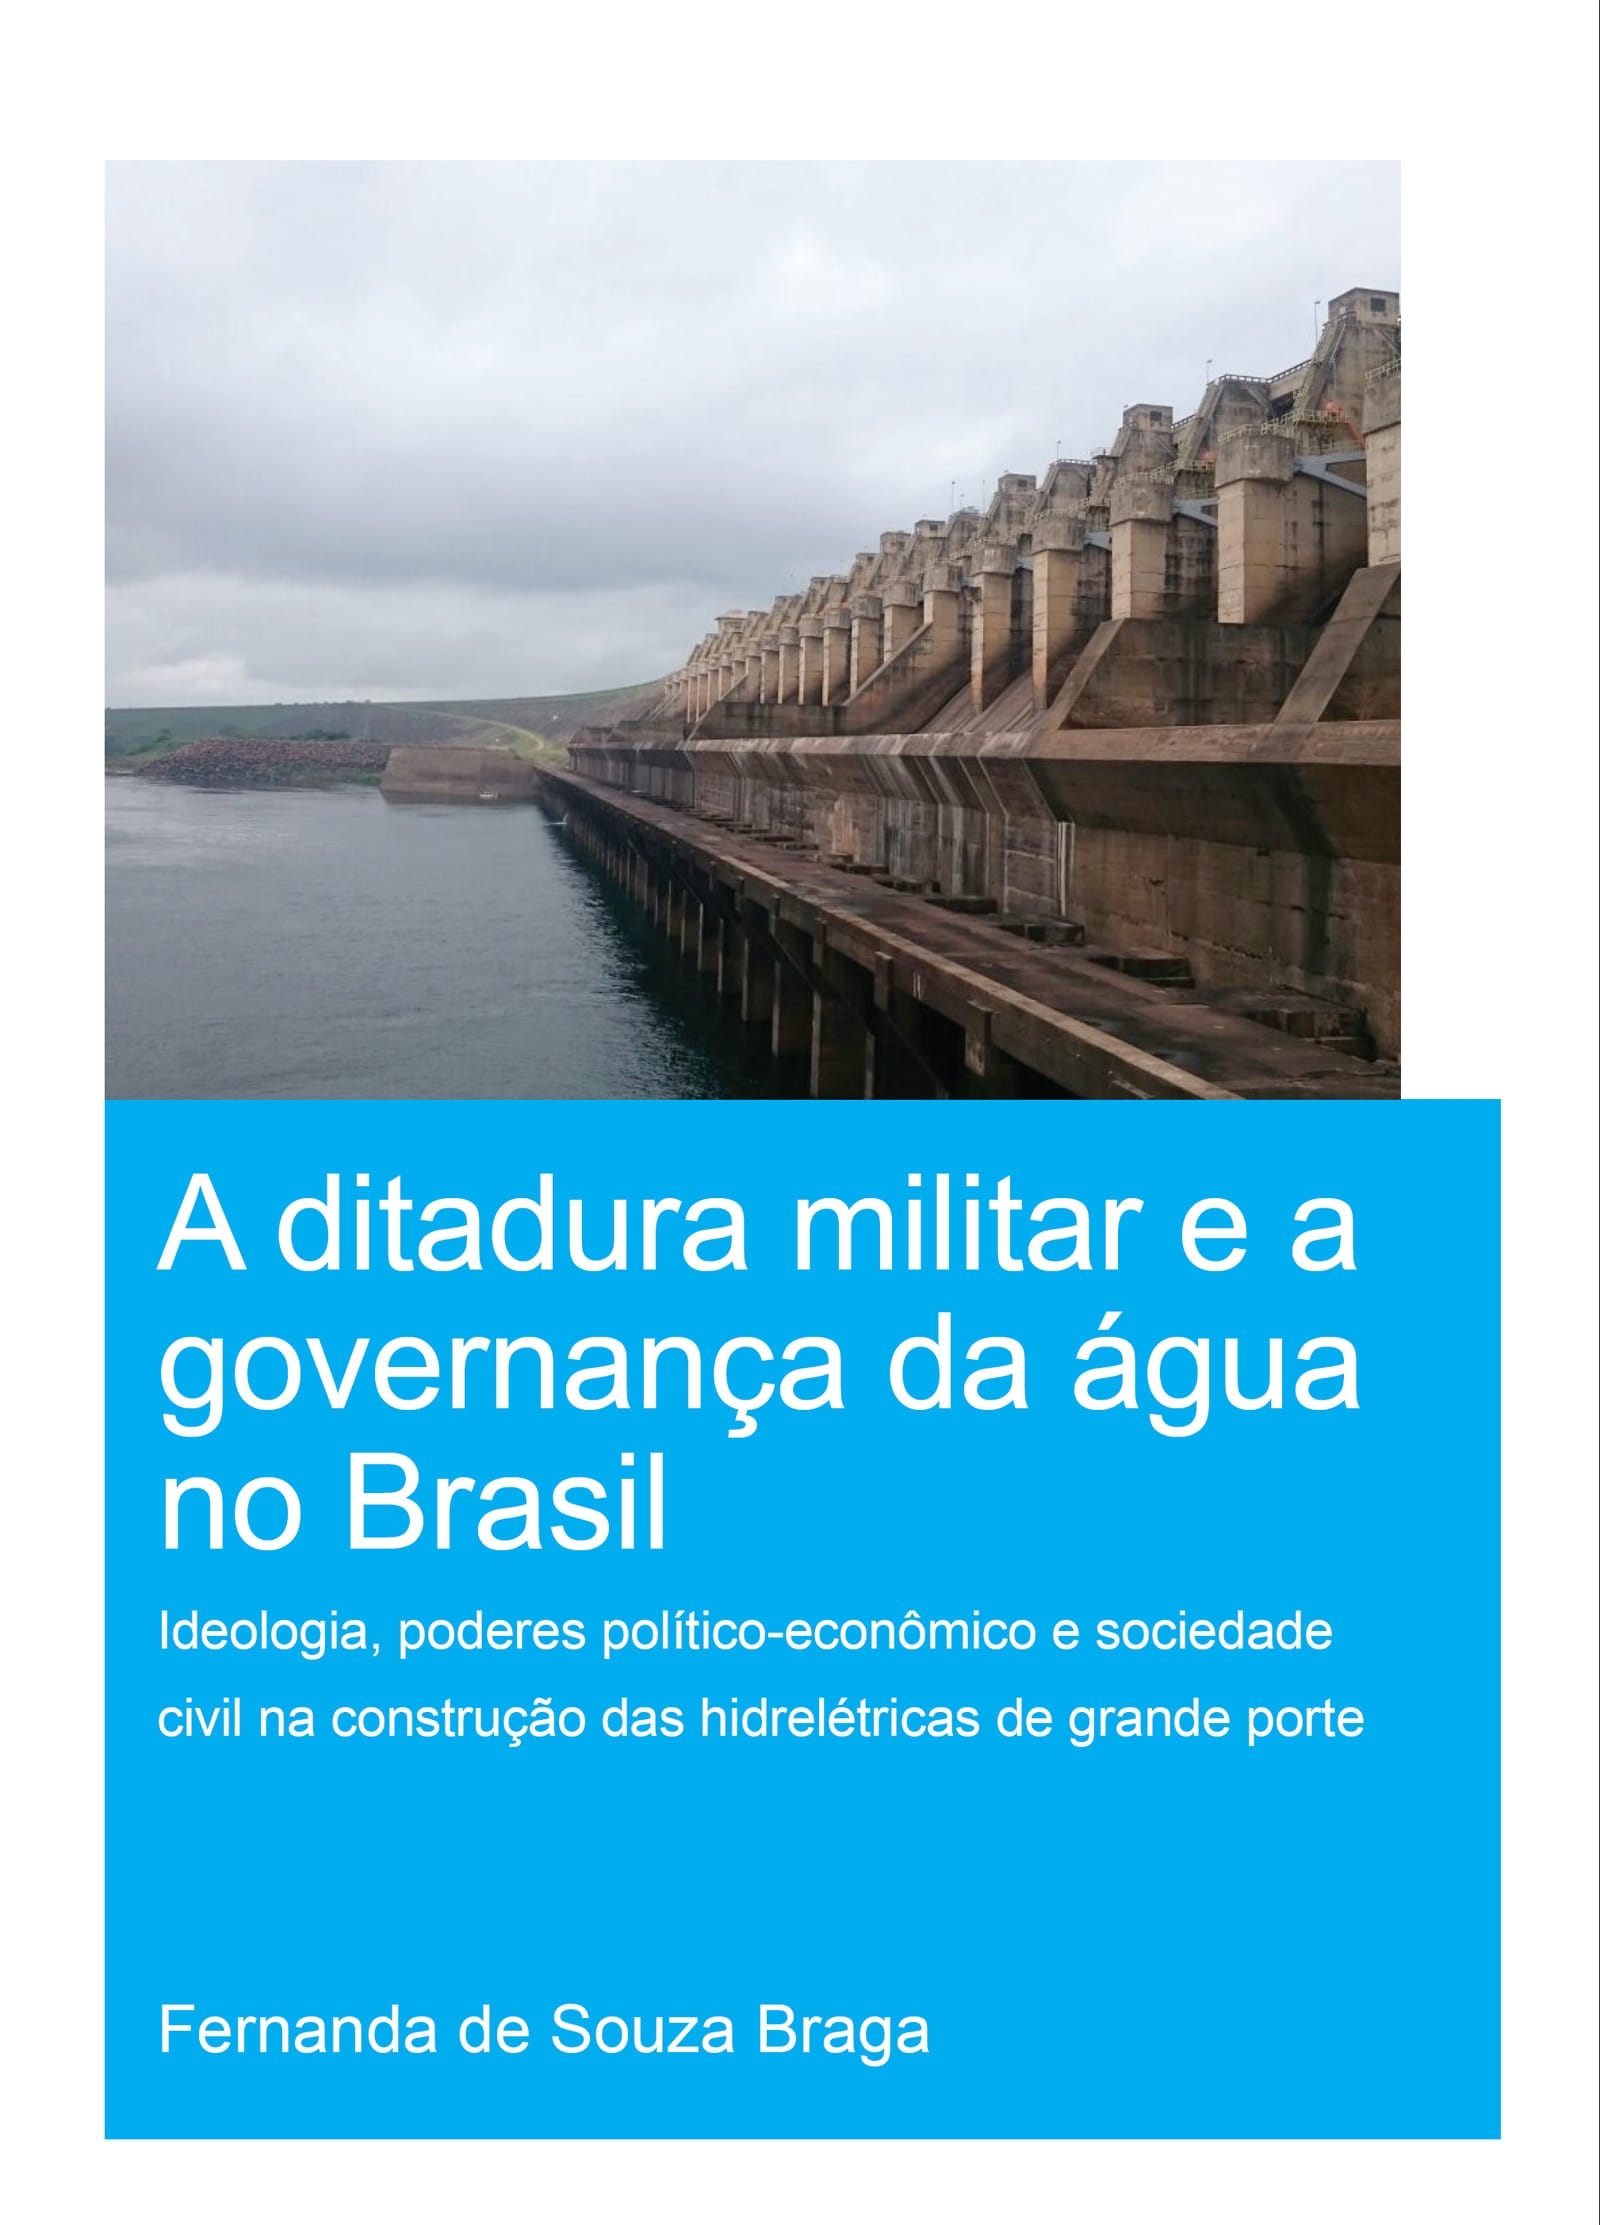 A Ditadura Militar E a Governança Da Água No Brasil (the Military Dictatorship and Water Governance in Brazil): Ideologia, Poderes Político-Econômico